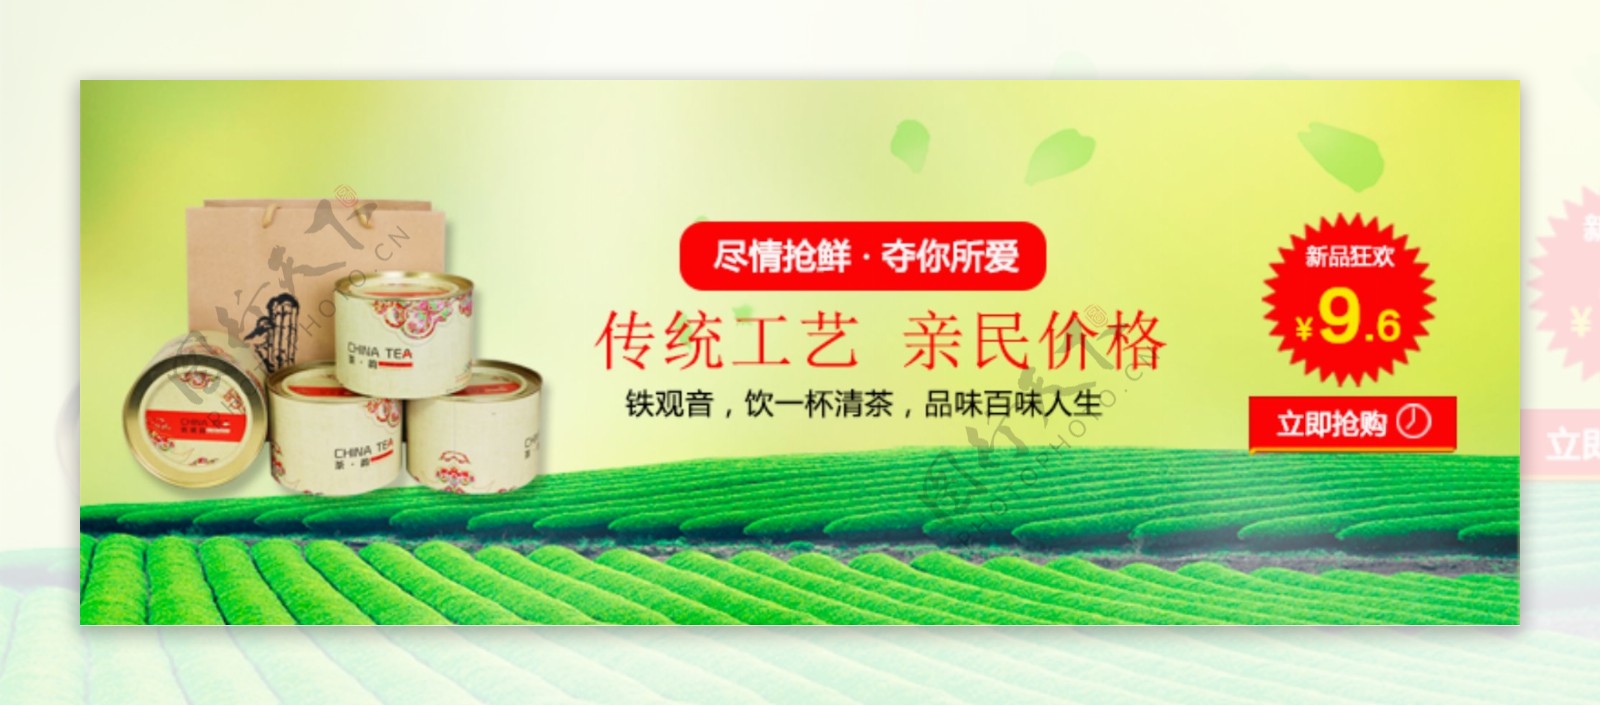 淘宝天猫铁观音绿茶促销宣传海报